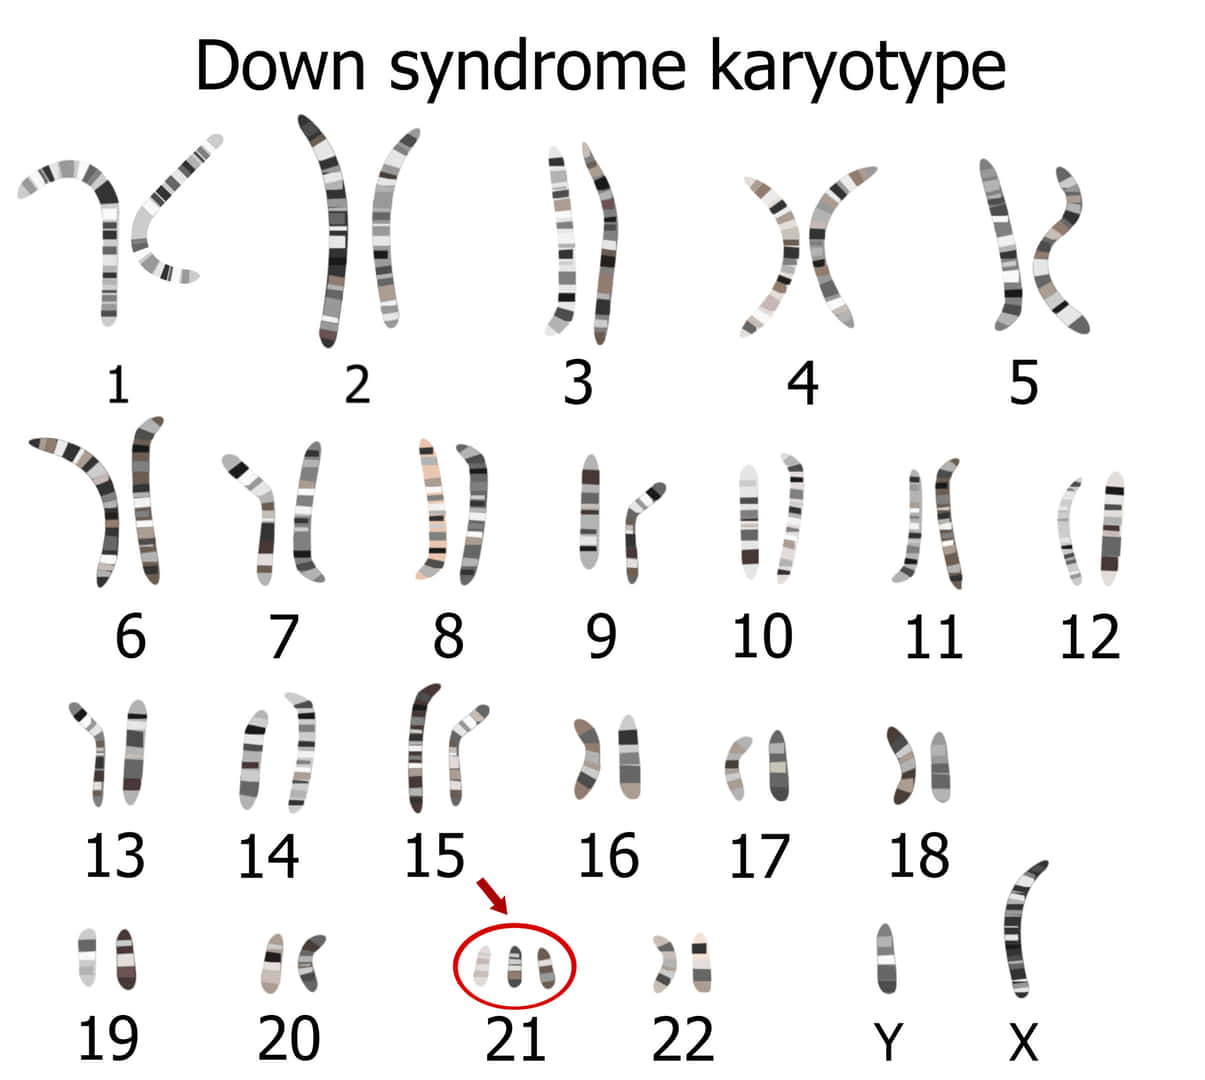 トリソミー21の染色体検査像